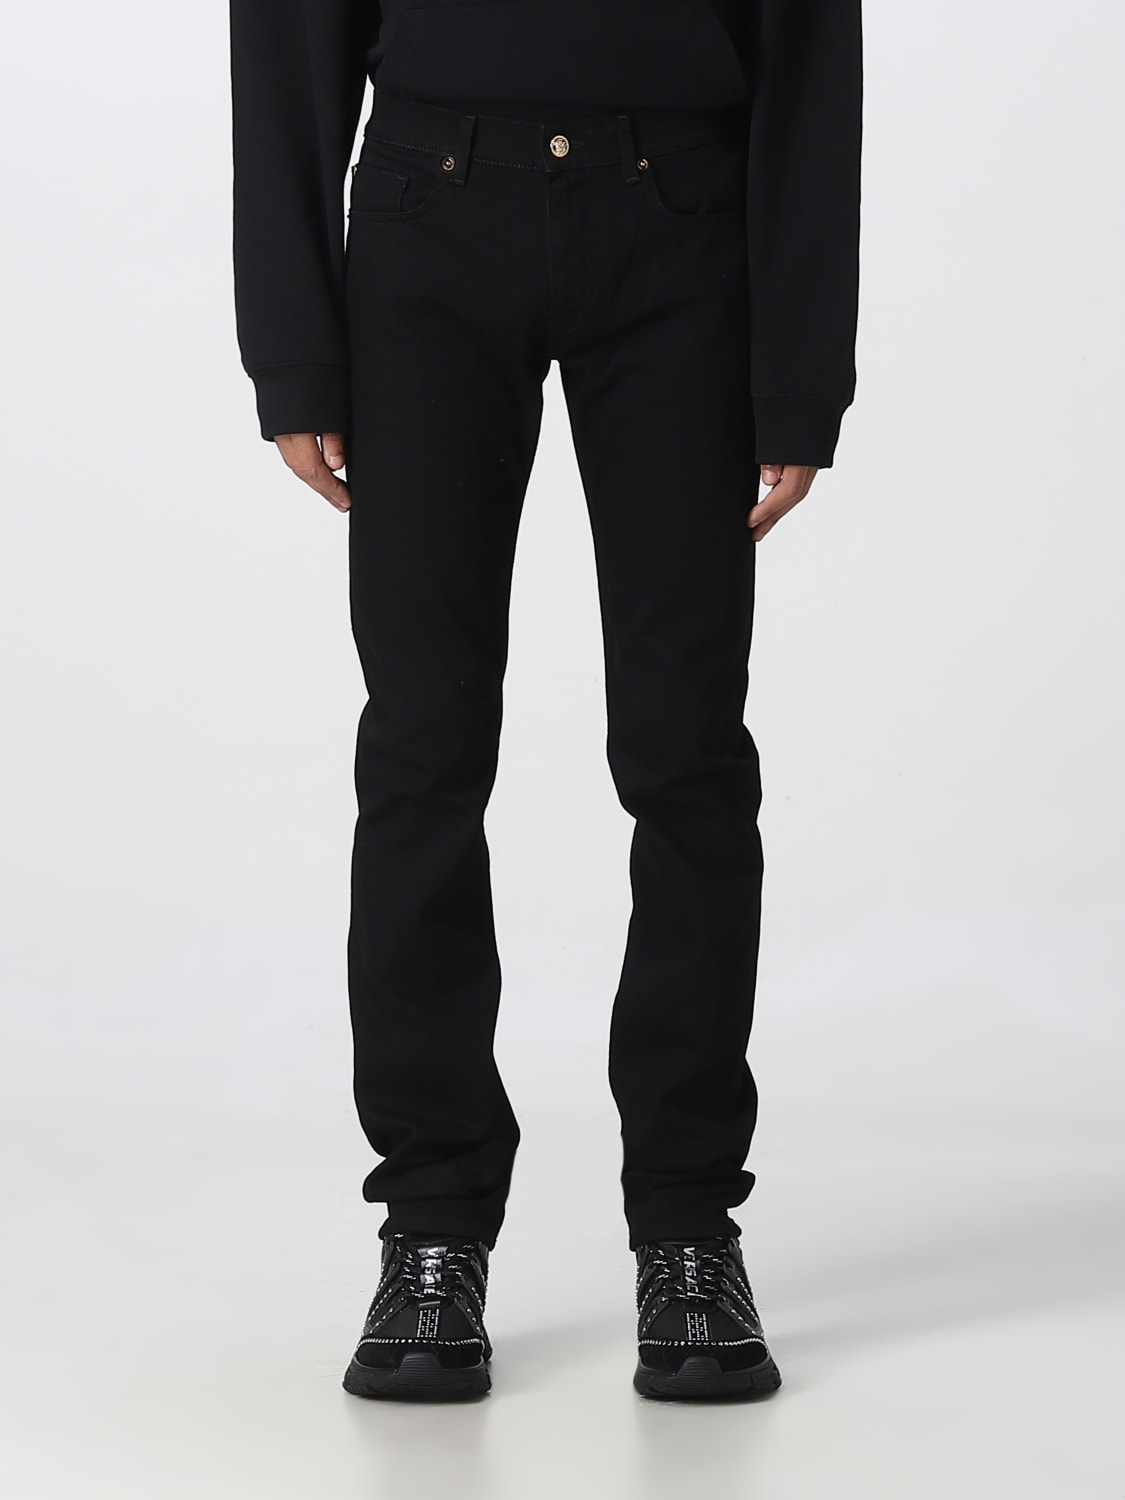 VERSACE: Jeans para hombre, Negro | Versace A818321A03069 en línea en GIGLIO.COM